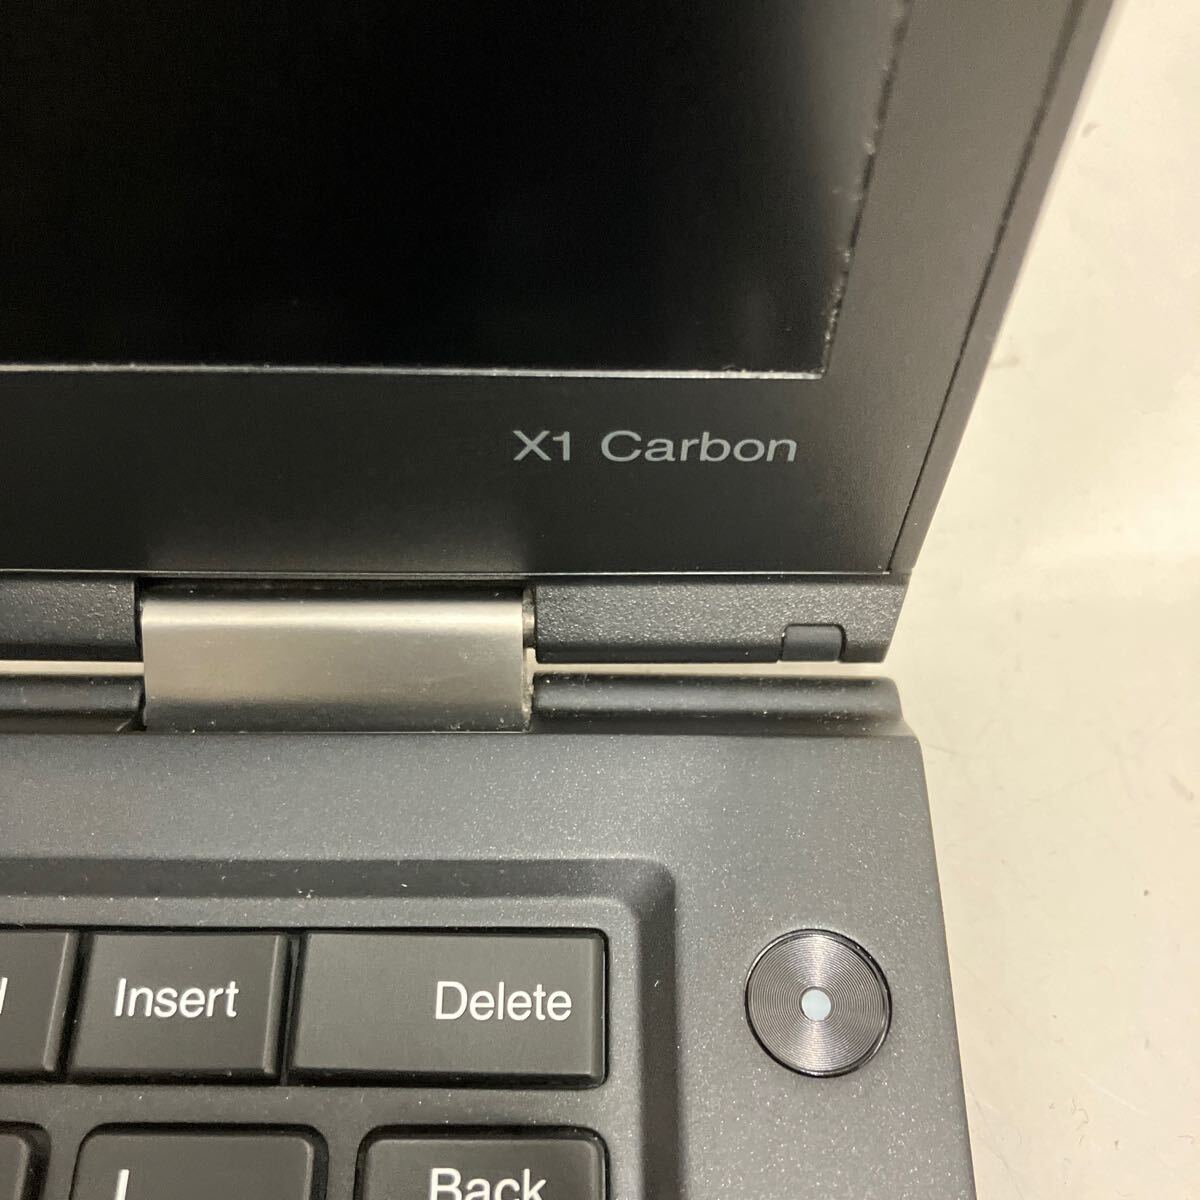 M183 Lenovo ThinkPad X1 carbon Core i7 6600U memory 8GB